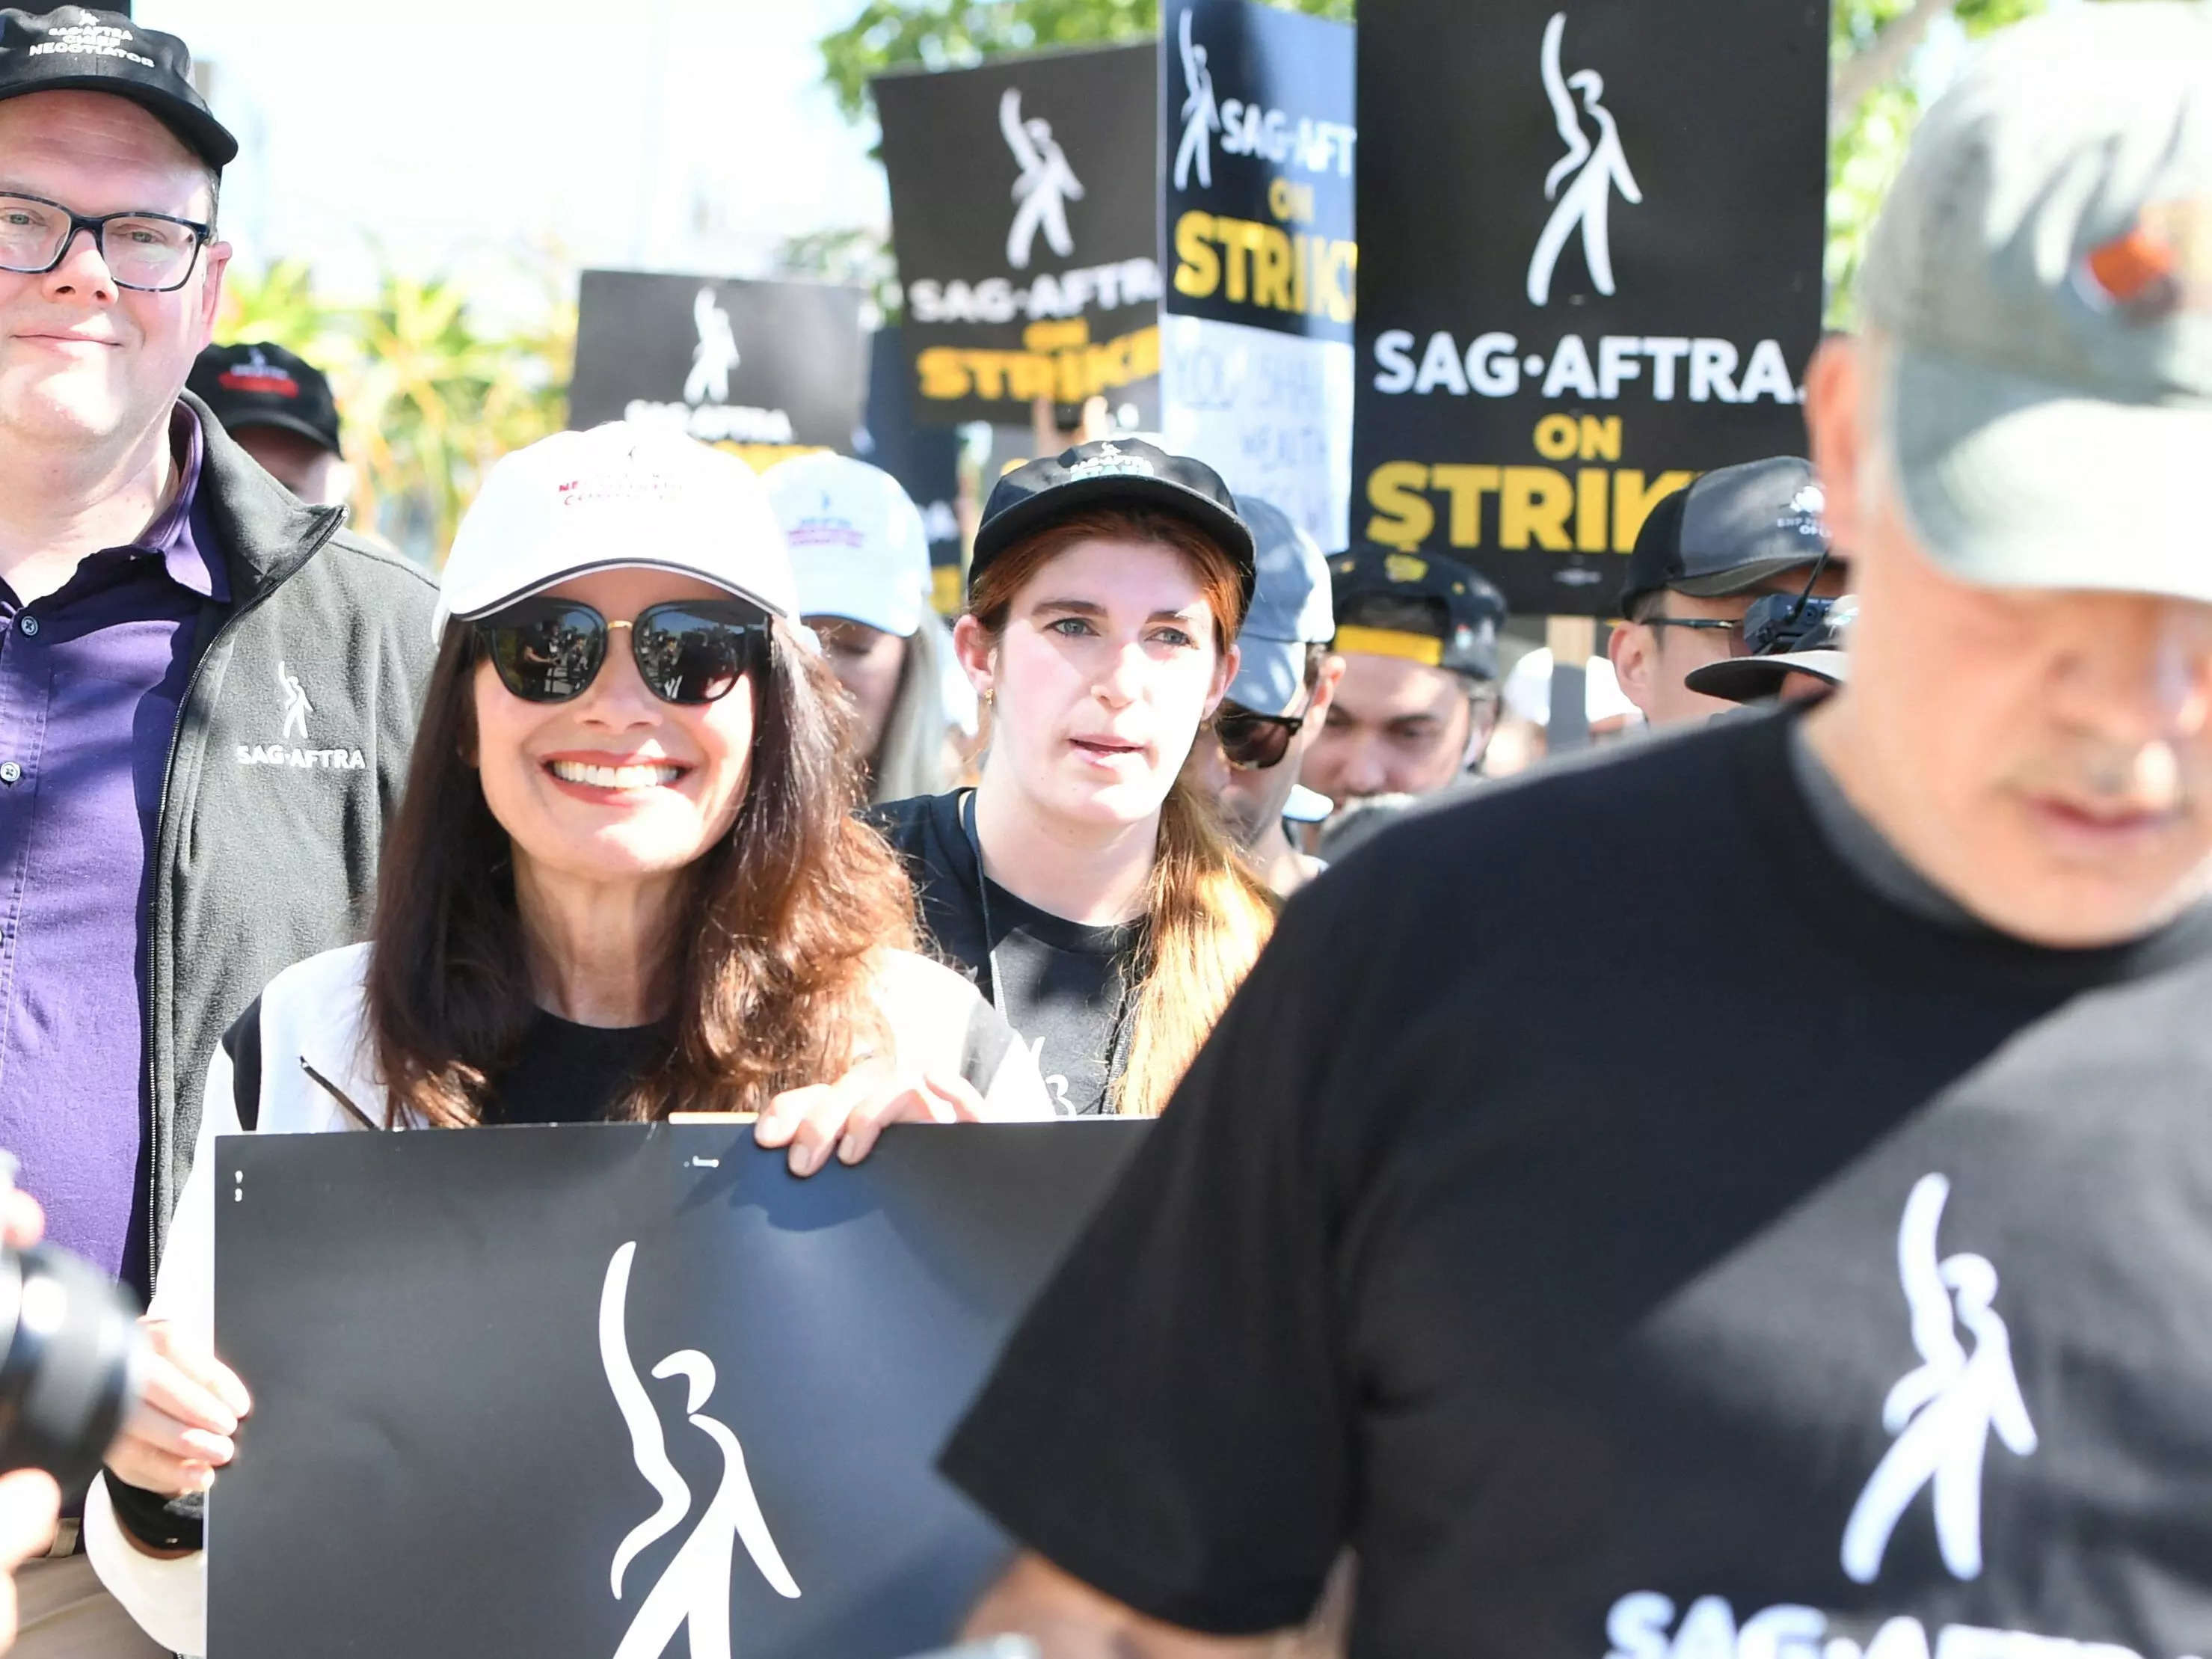 Actors on strike in SAG-AFTRA strike holding picket signs